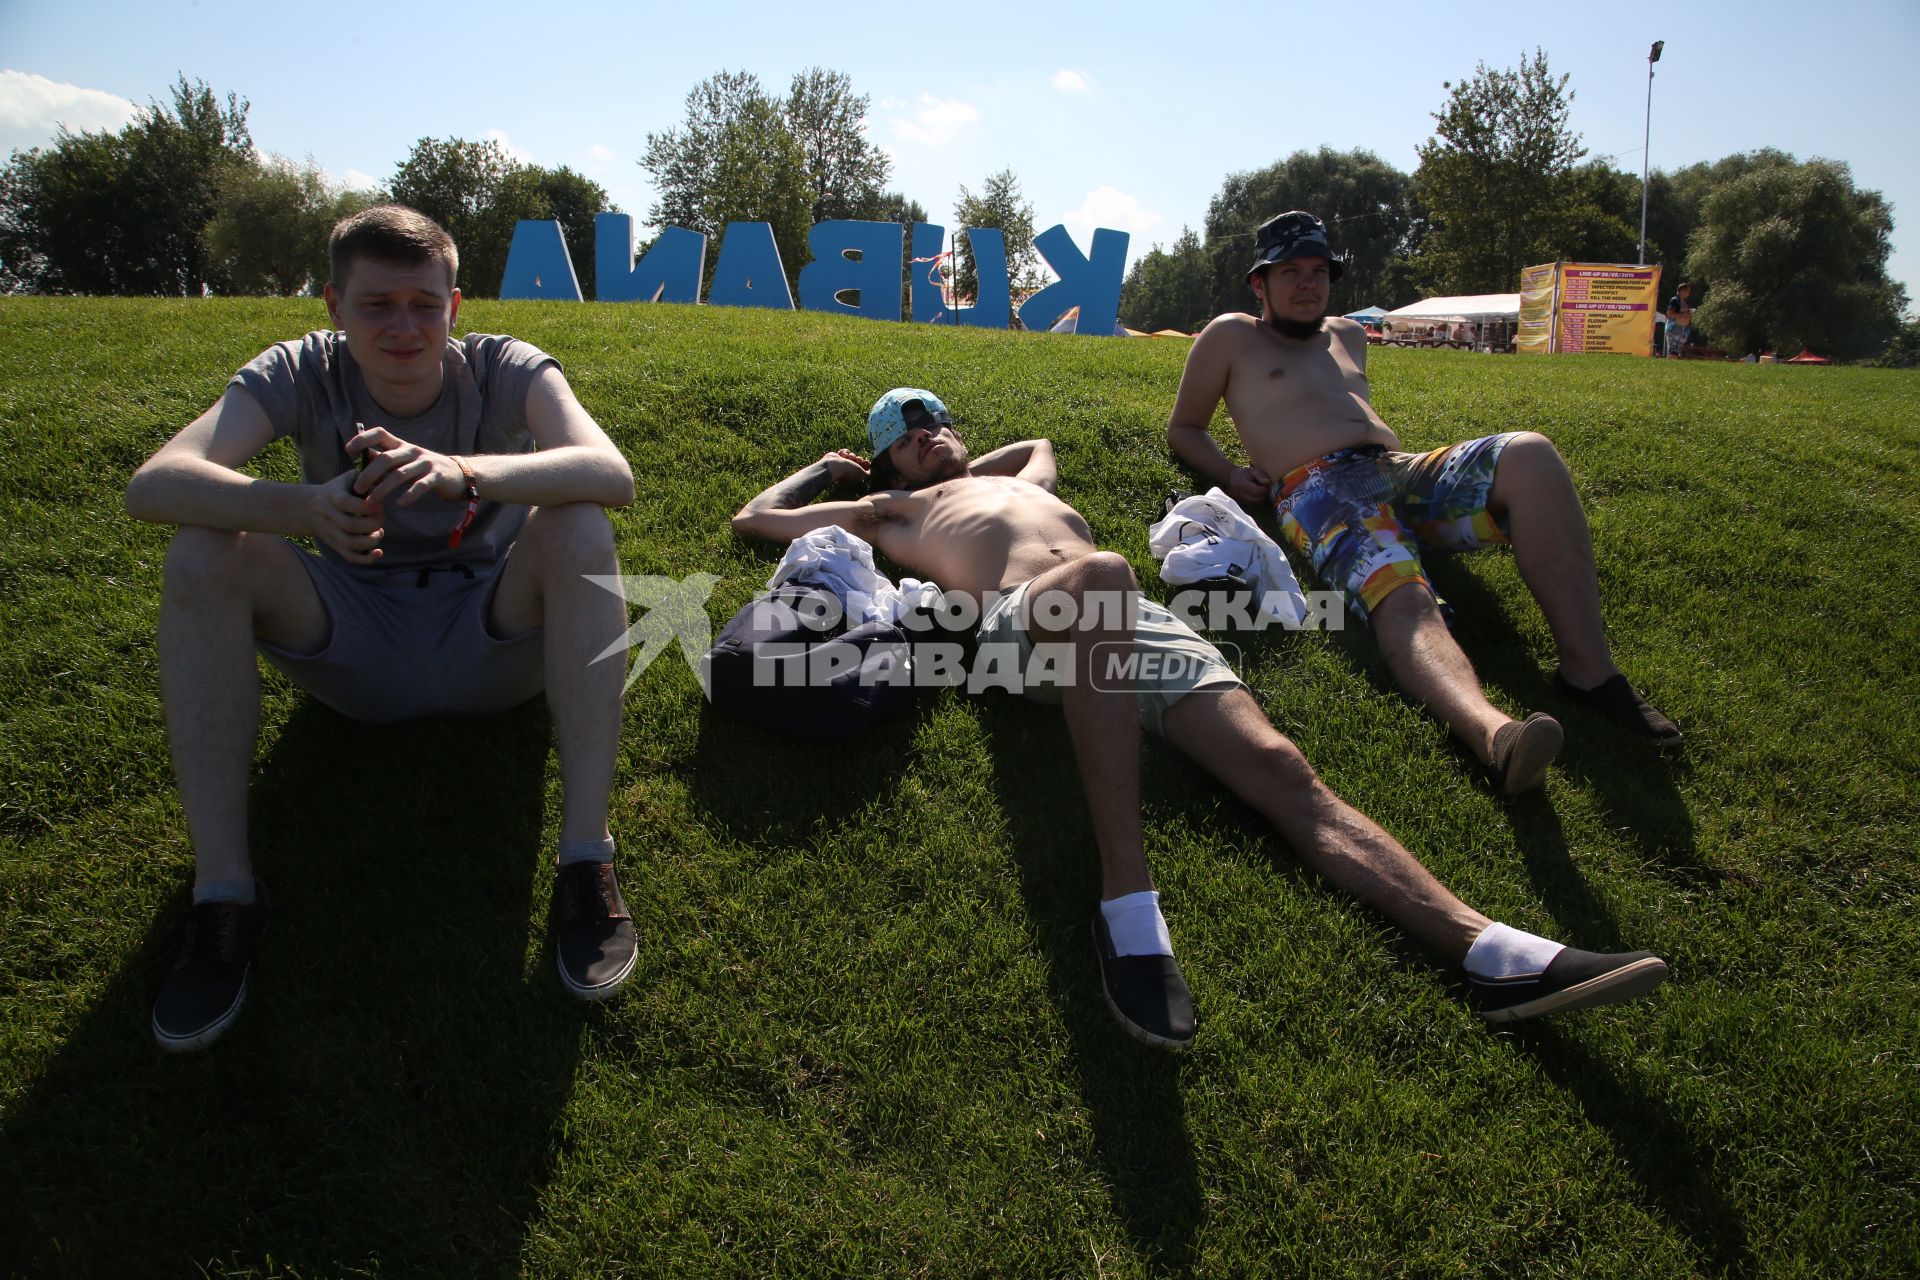 Диск191. Остров Луцавсала. Международный музыкальный фестиваль KUBANA 2015. На снимке: трое ребят отдыхают на газоне на фоне надписи KUBANA